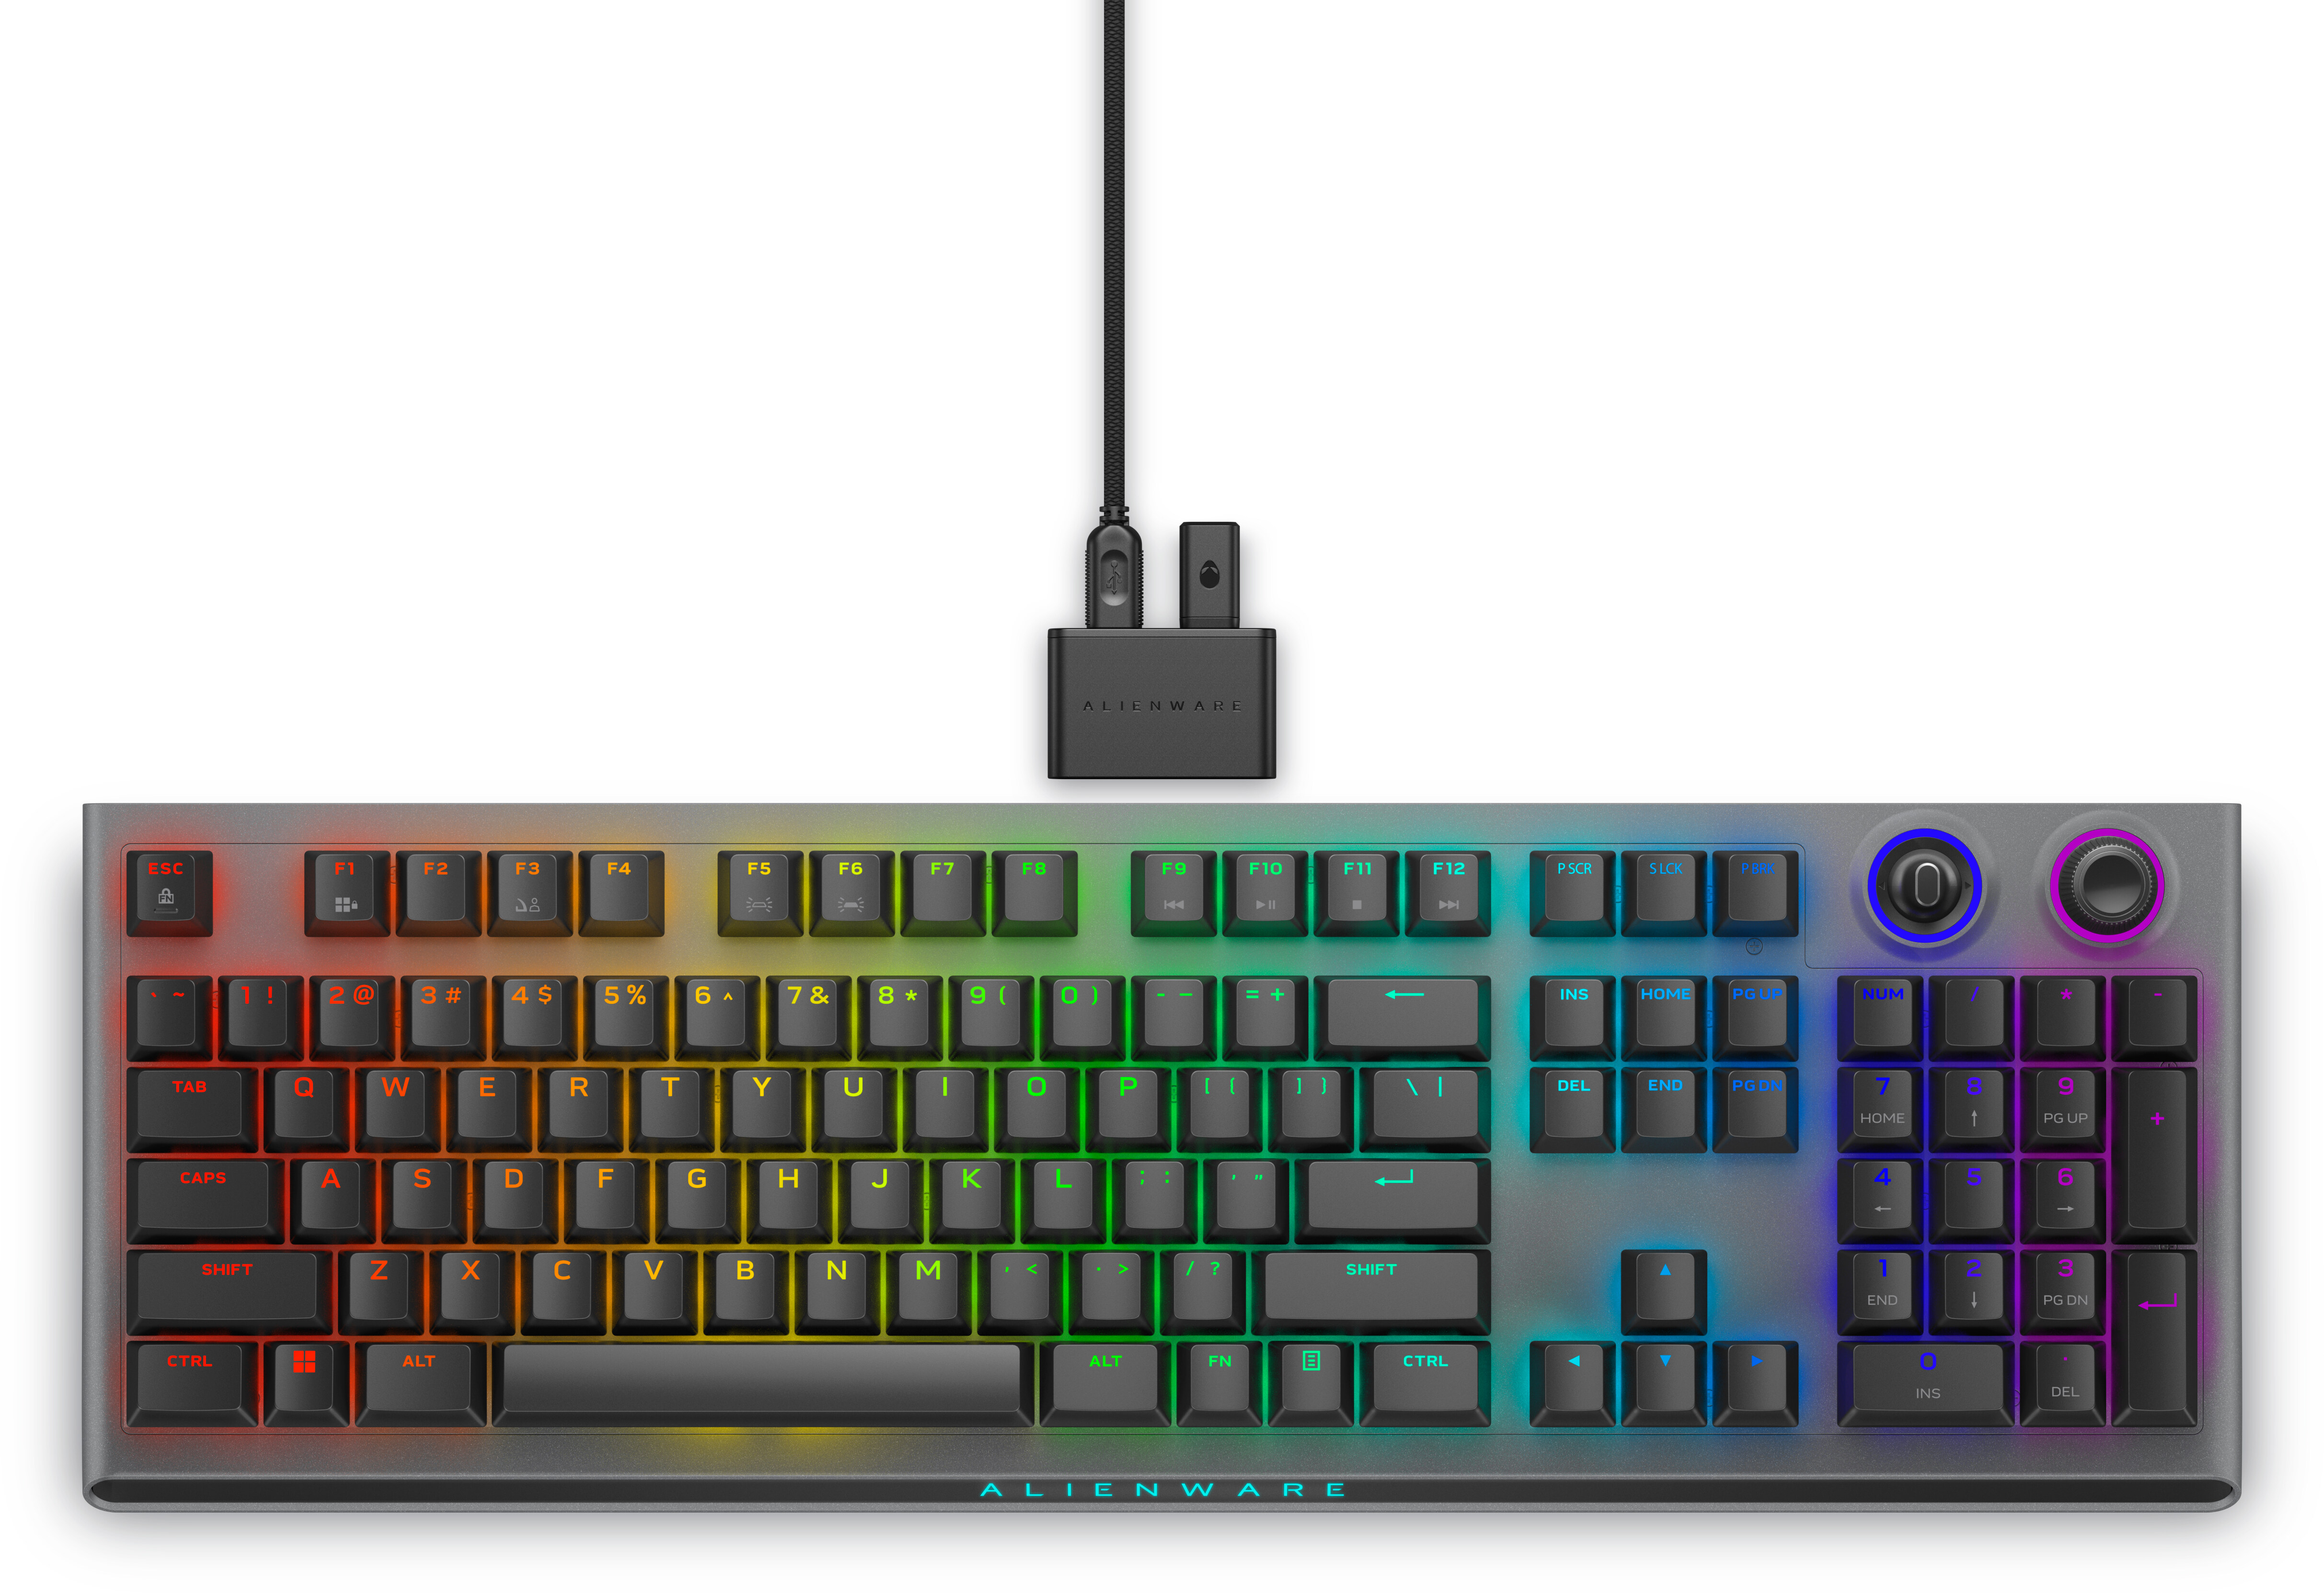 Custom White RGB LED Teclado Inalambrico Clavier Gaming Keybord